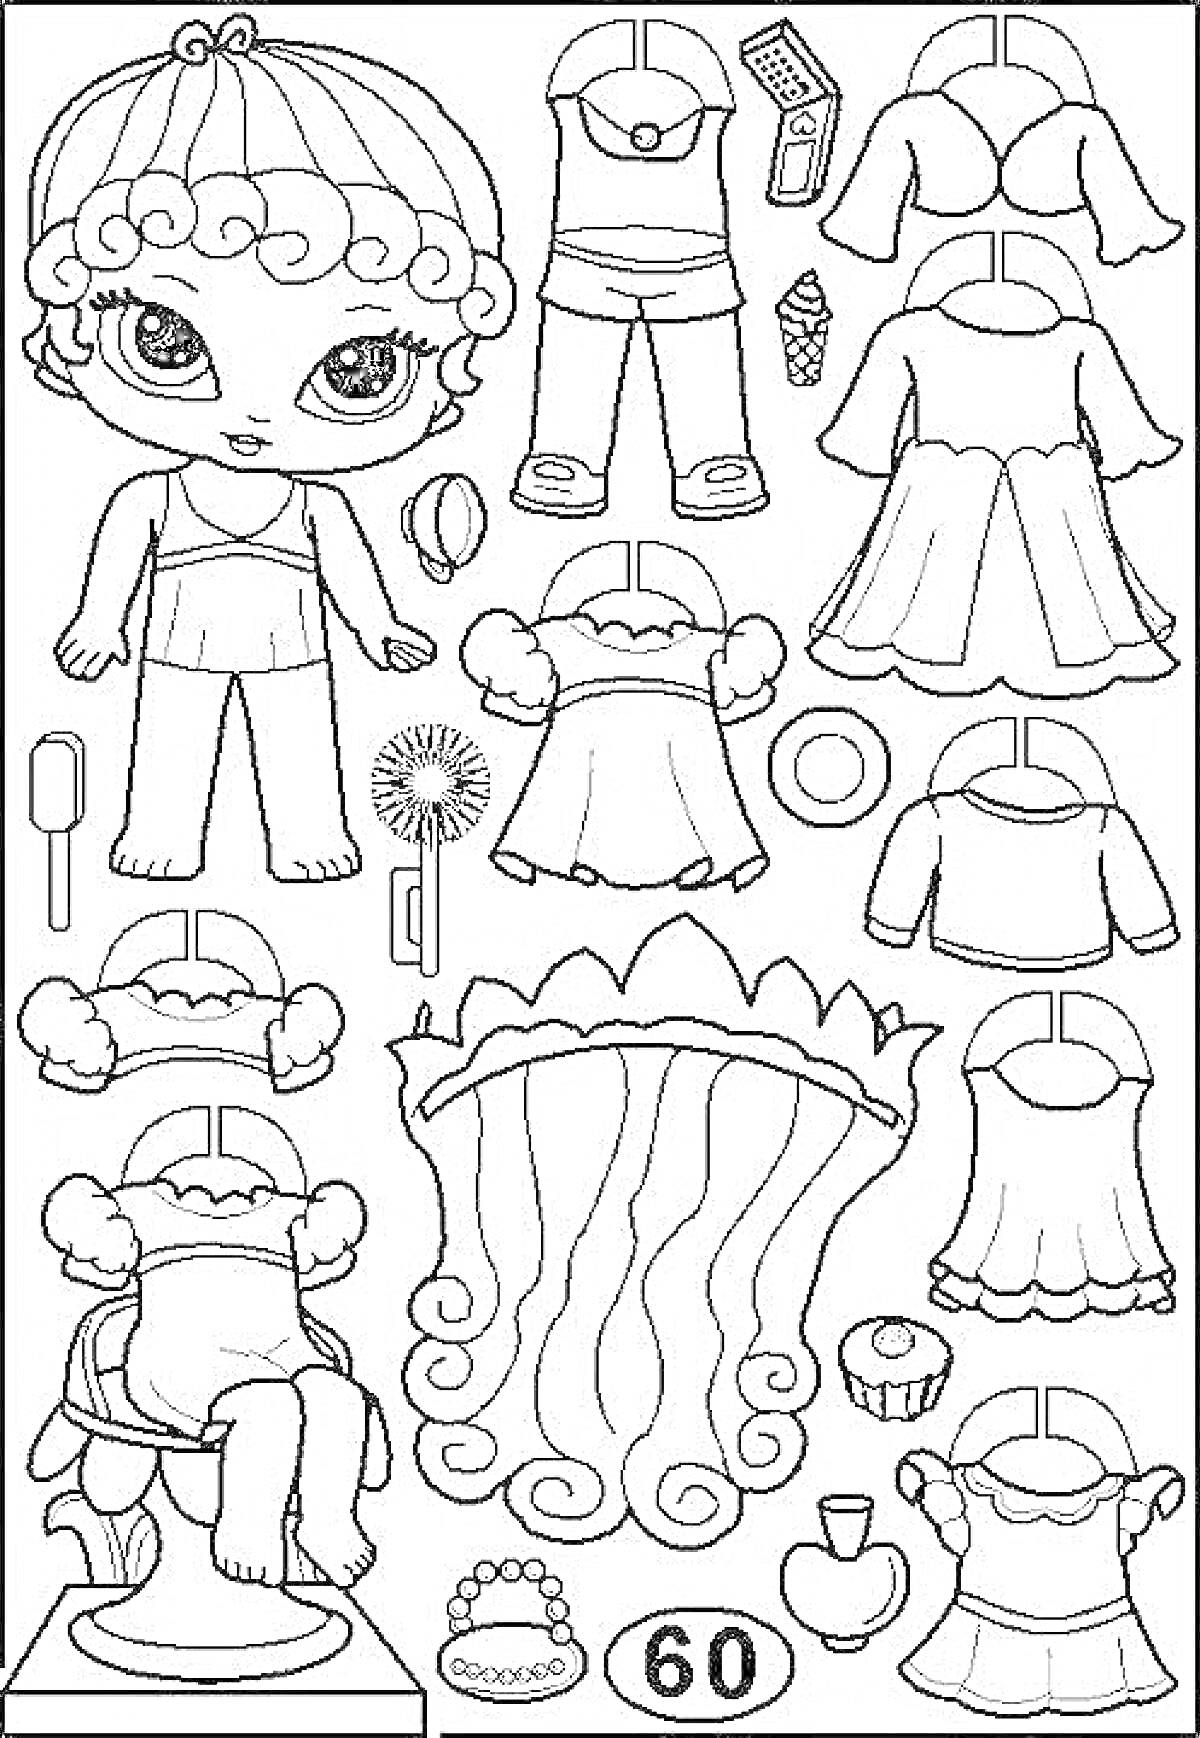 Раскраска Кукла ЛОЛ с различными нарядами и аксессуарами, включая платья, верхнюю одежду, шорты, туфли, сумку, венок, мороженое, леденец, мяч и косметику.